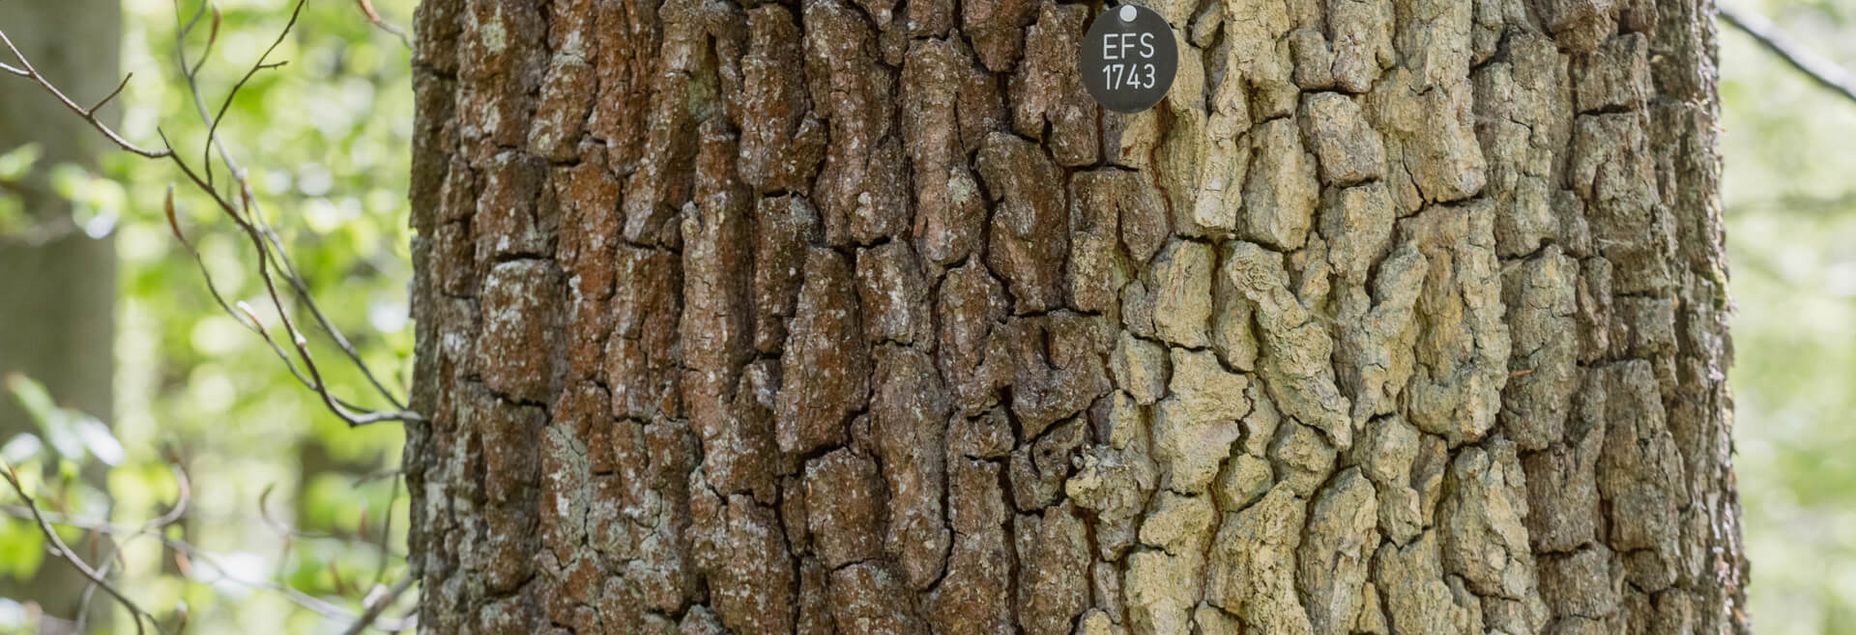 Baum EFS 1743 - Plakette